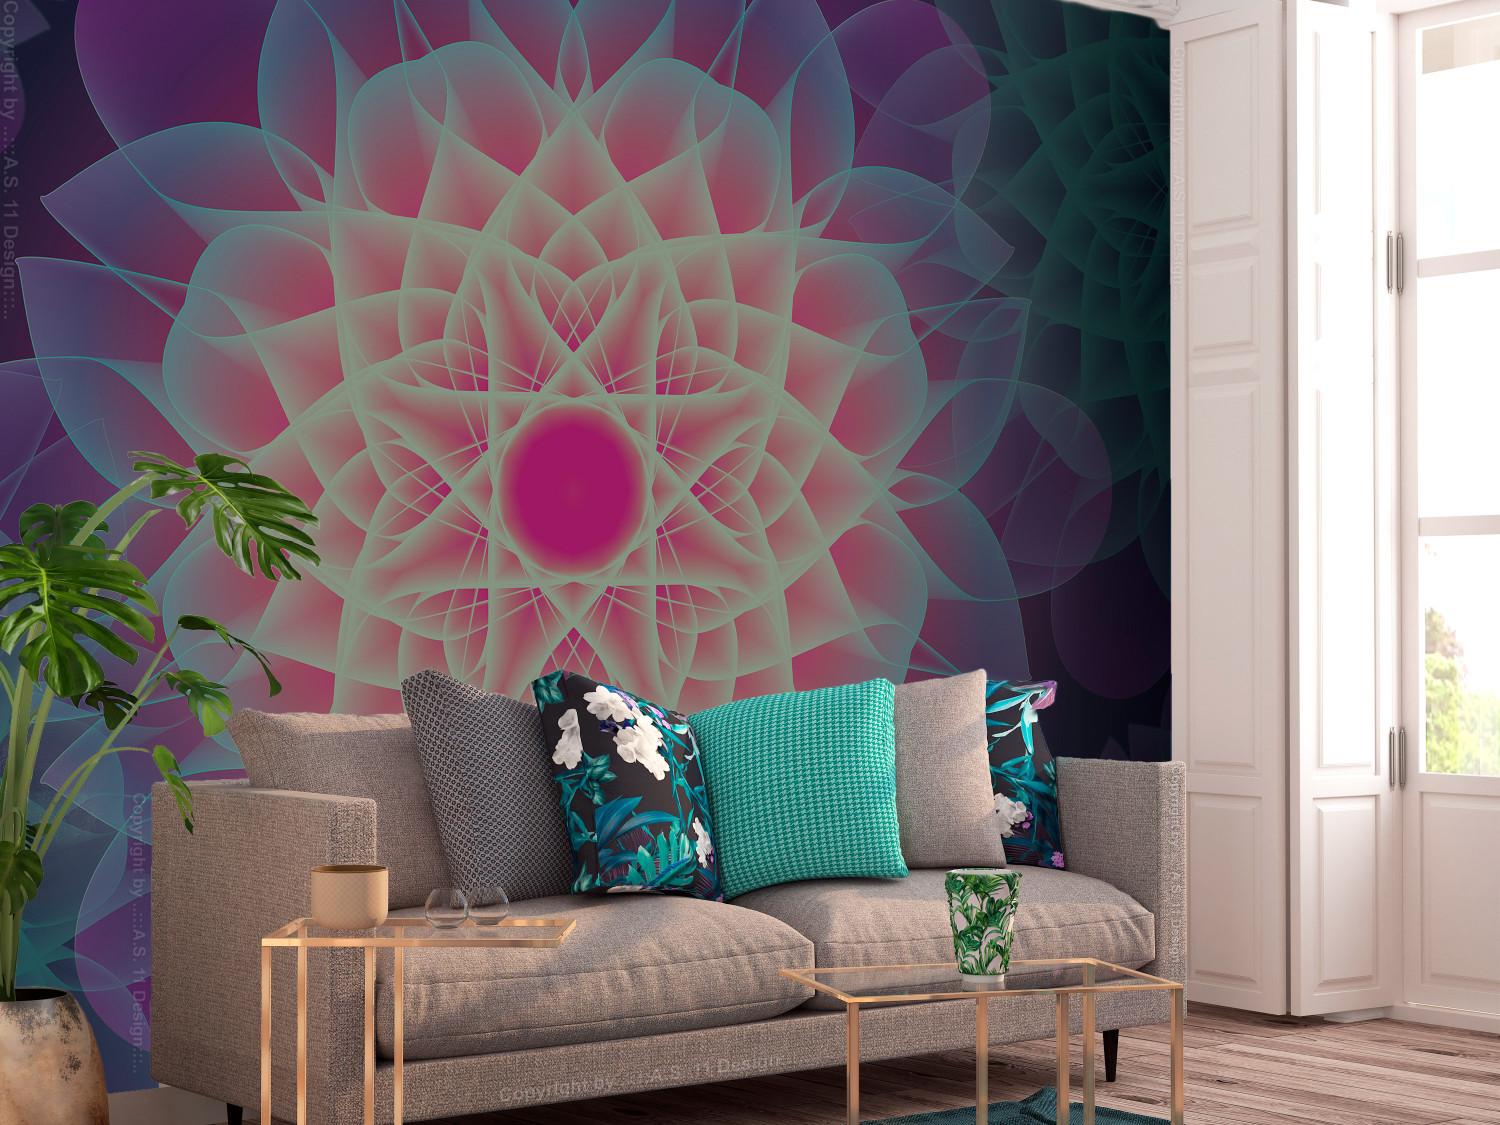 Fotomural a medida Simetría floral - abstracto con un patrón floral geométrico